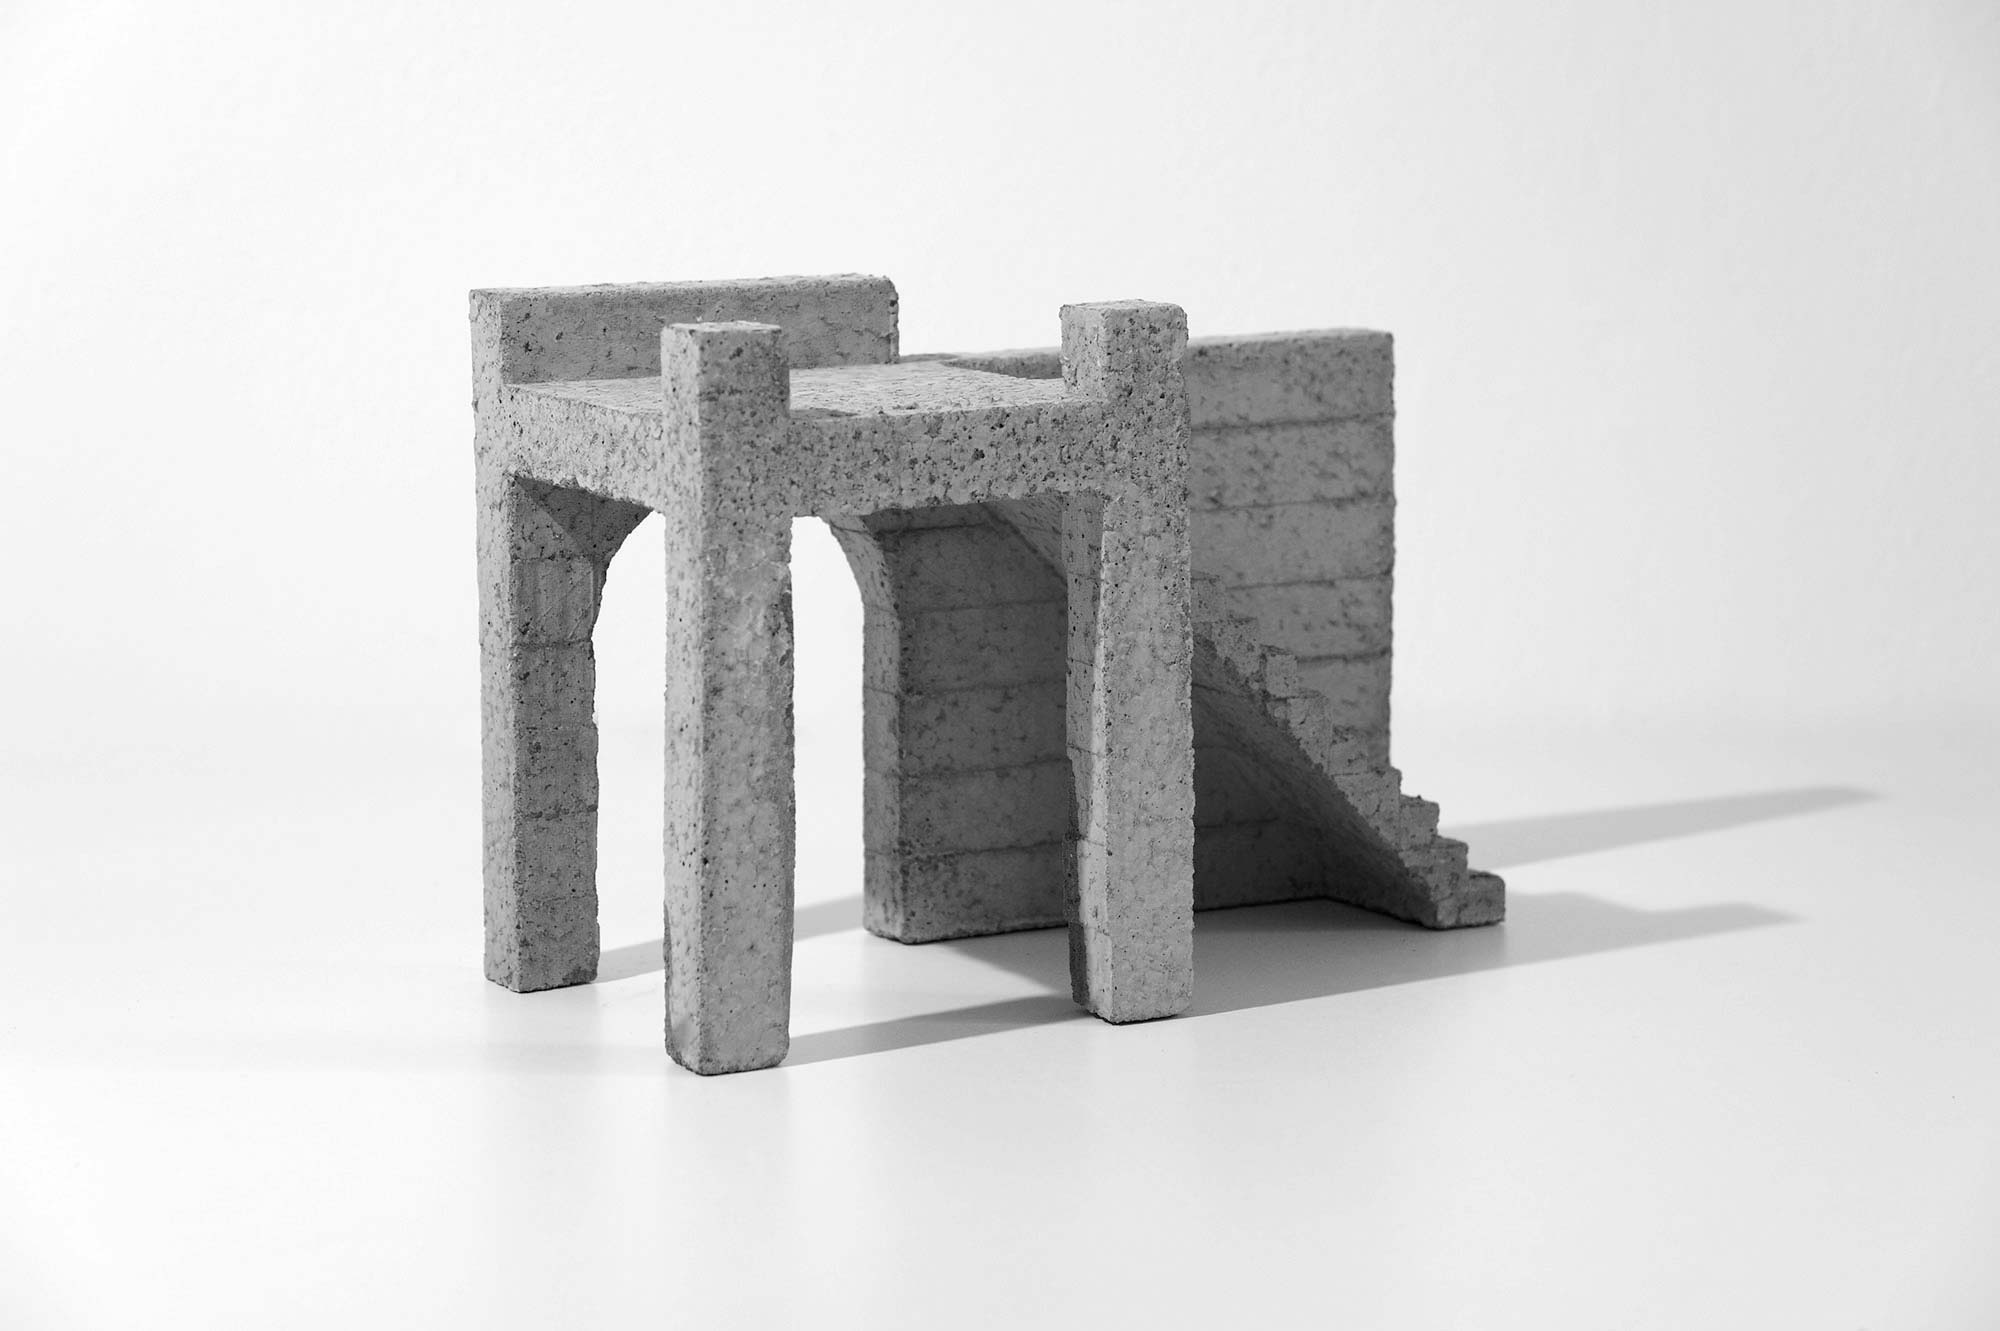 mattia listowski art design objet décoration sculpture béton moulage micro architecture maquette passage 6 édition limitée numérotée signée paris bruxelles 2021